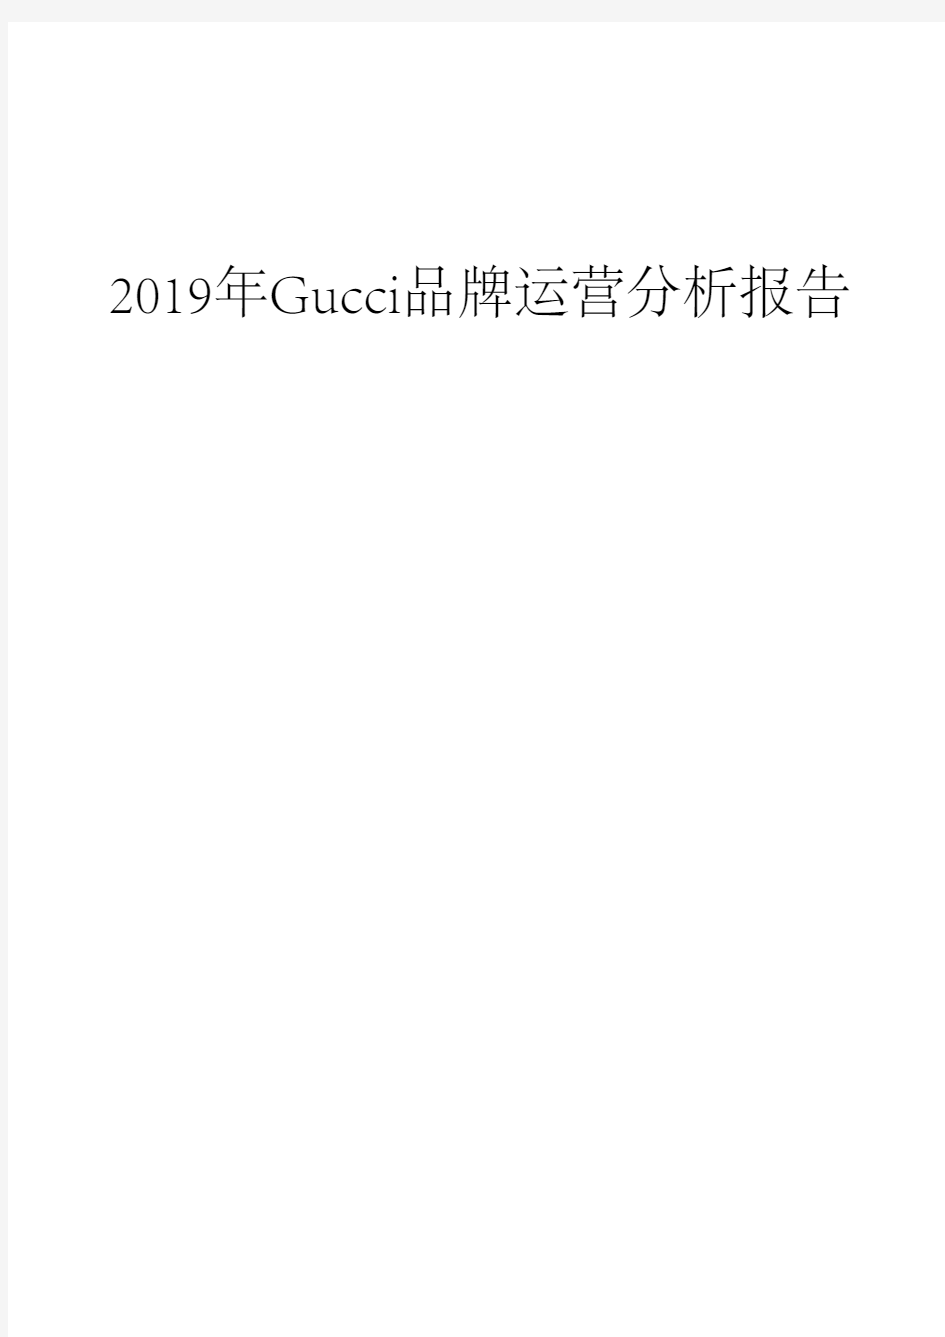 2019年Gucci品牌运营分析报告